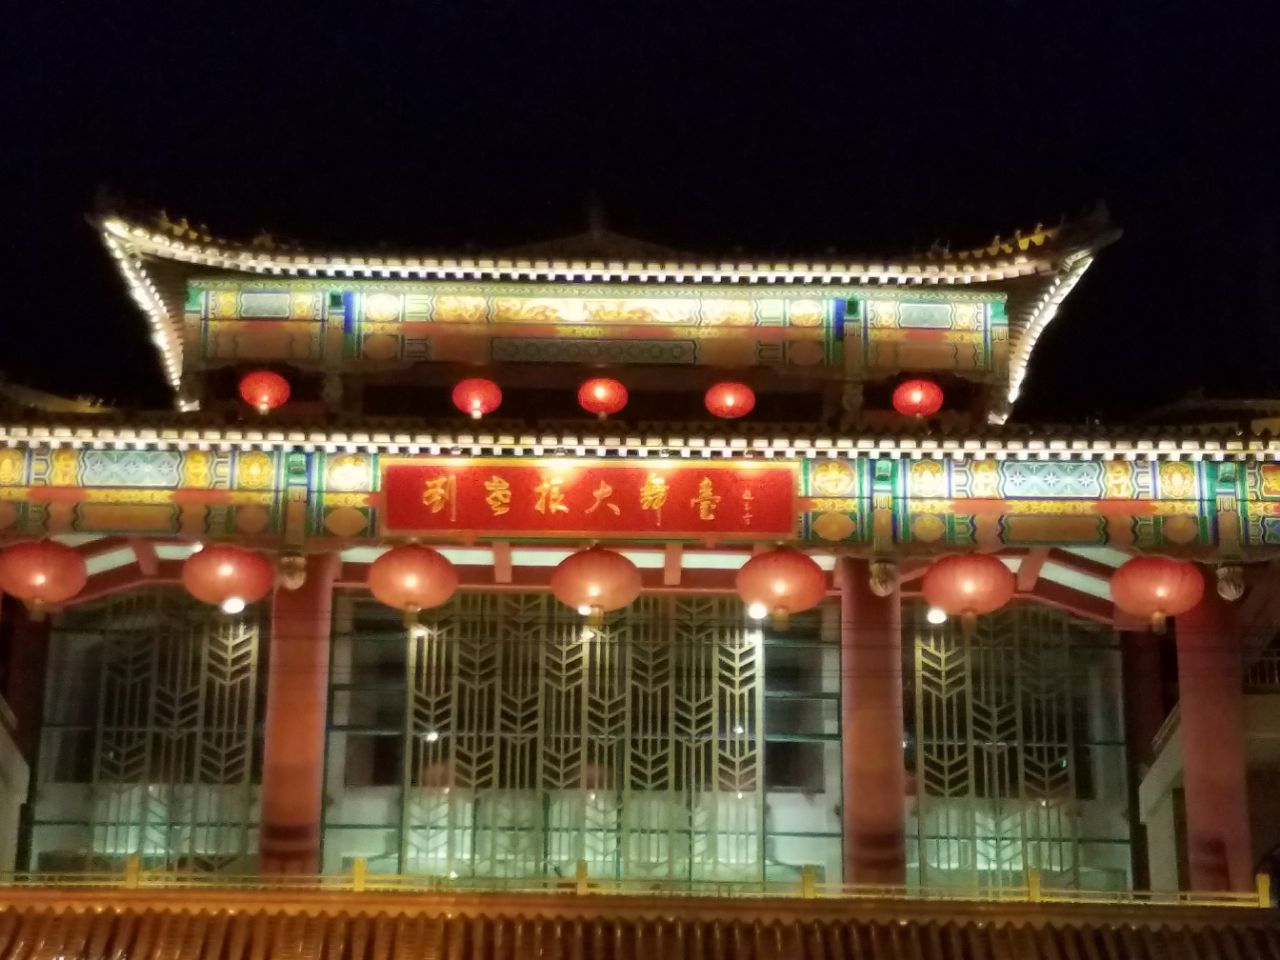 刘老根大舞台泰安剧场图片